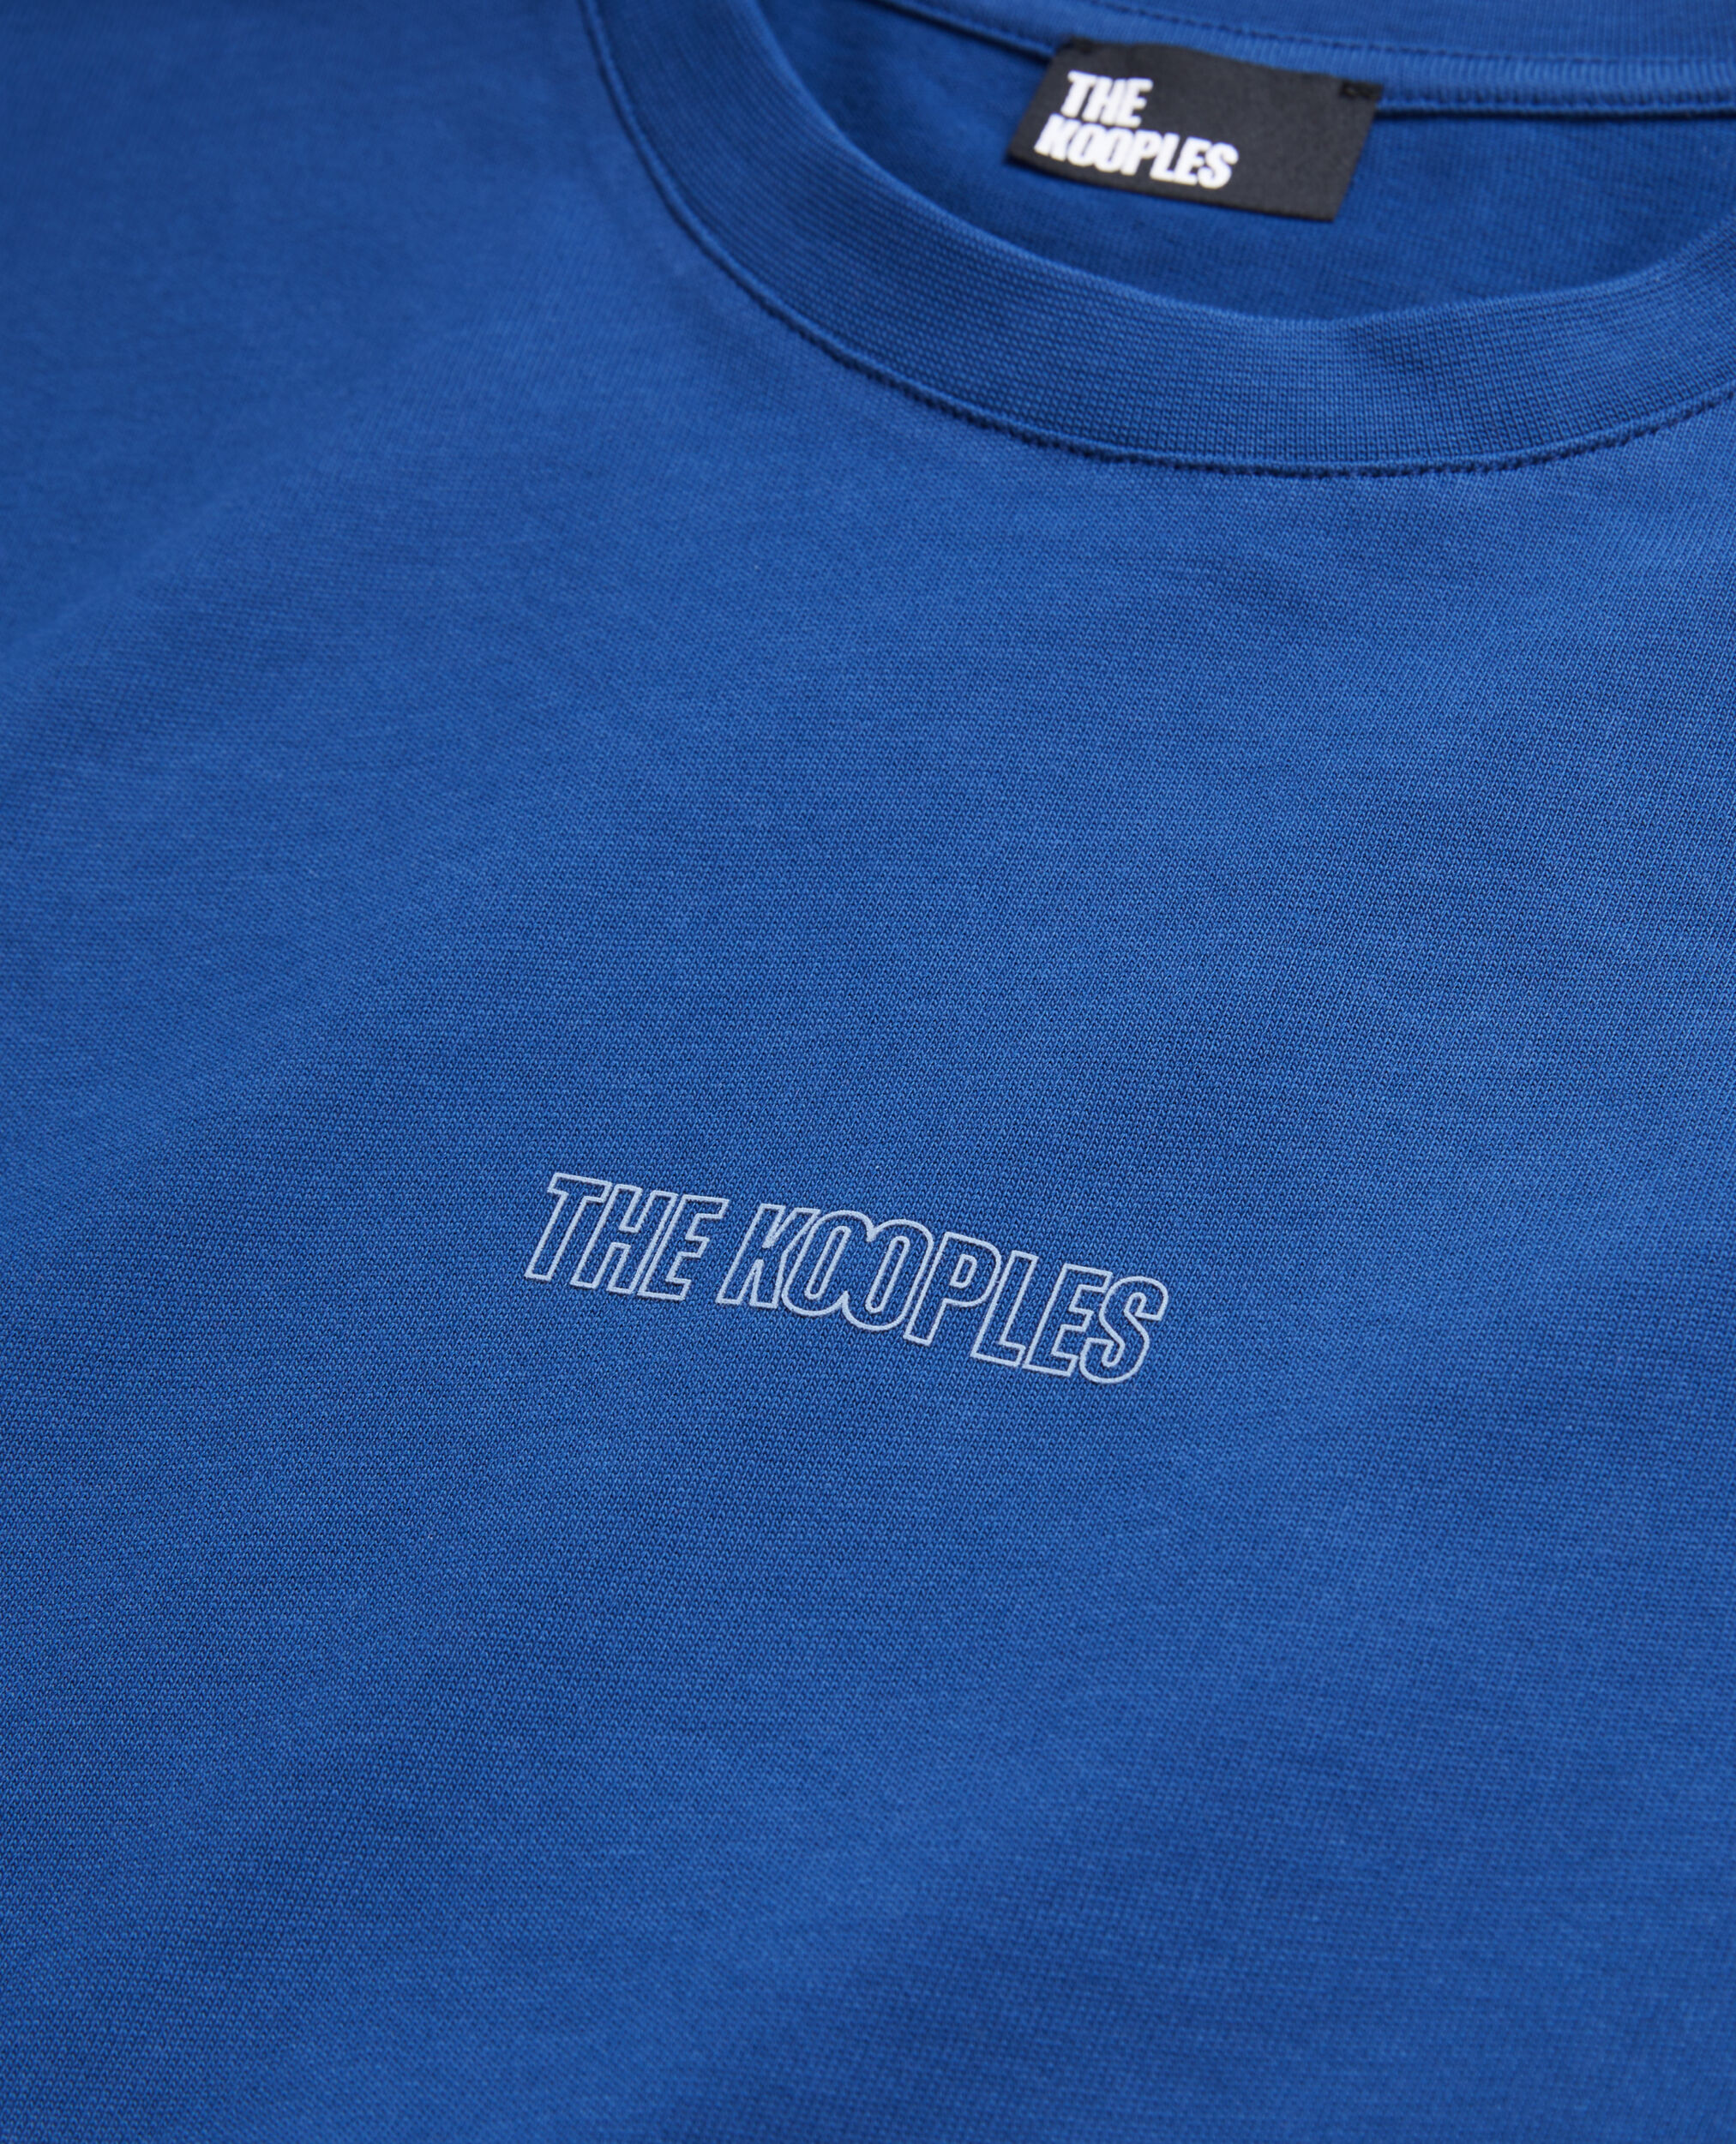 Leuchtend blaues T-Shirt Herren mit Logo, ROYAL BLUE - DARK NAVY, hi-res image number null